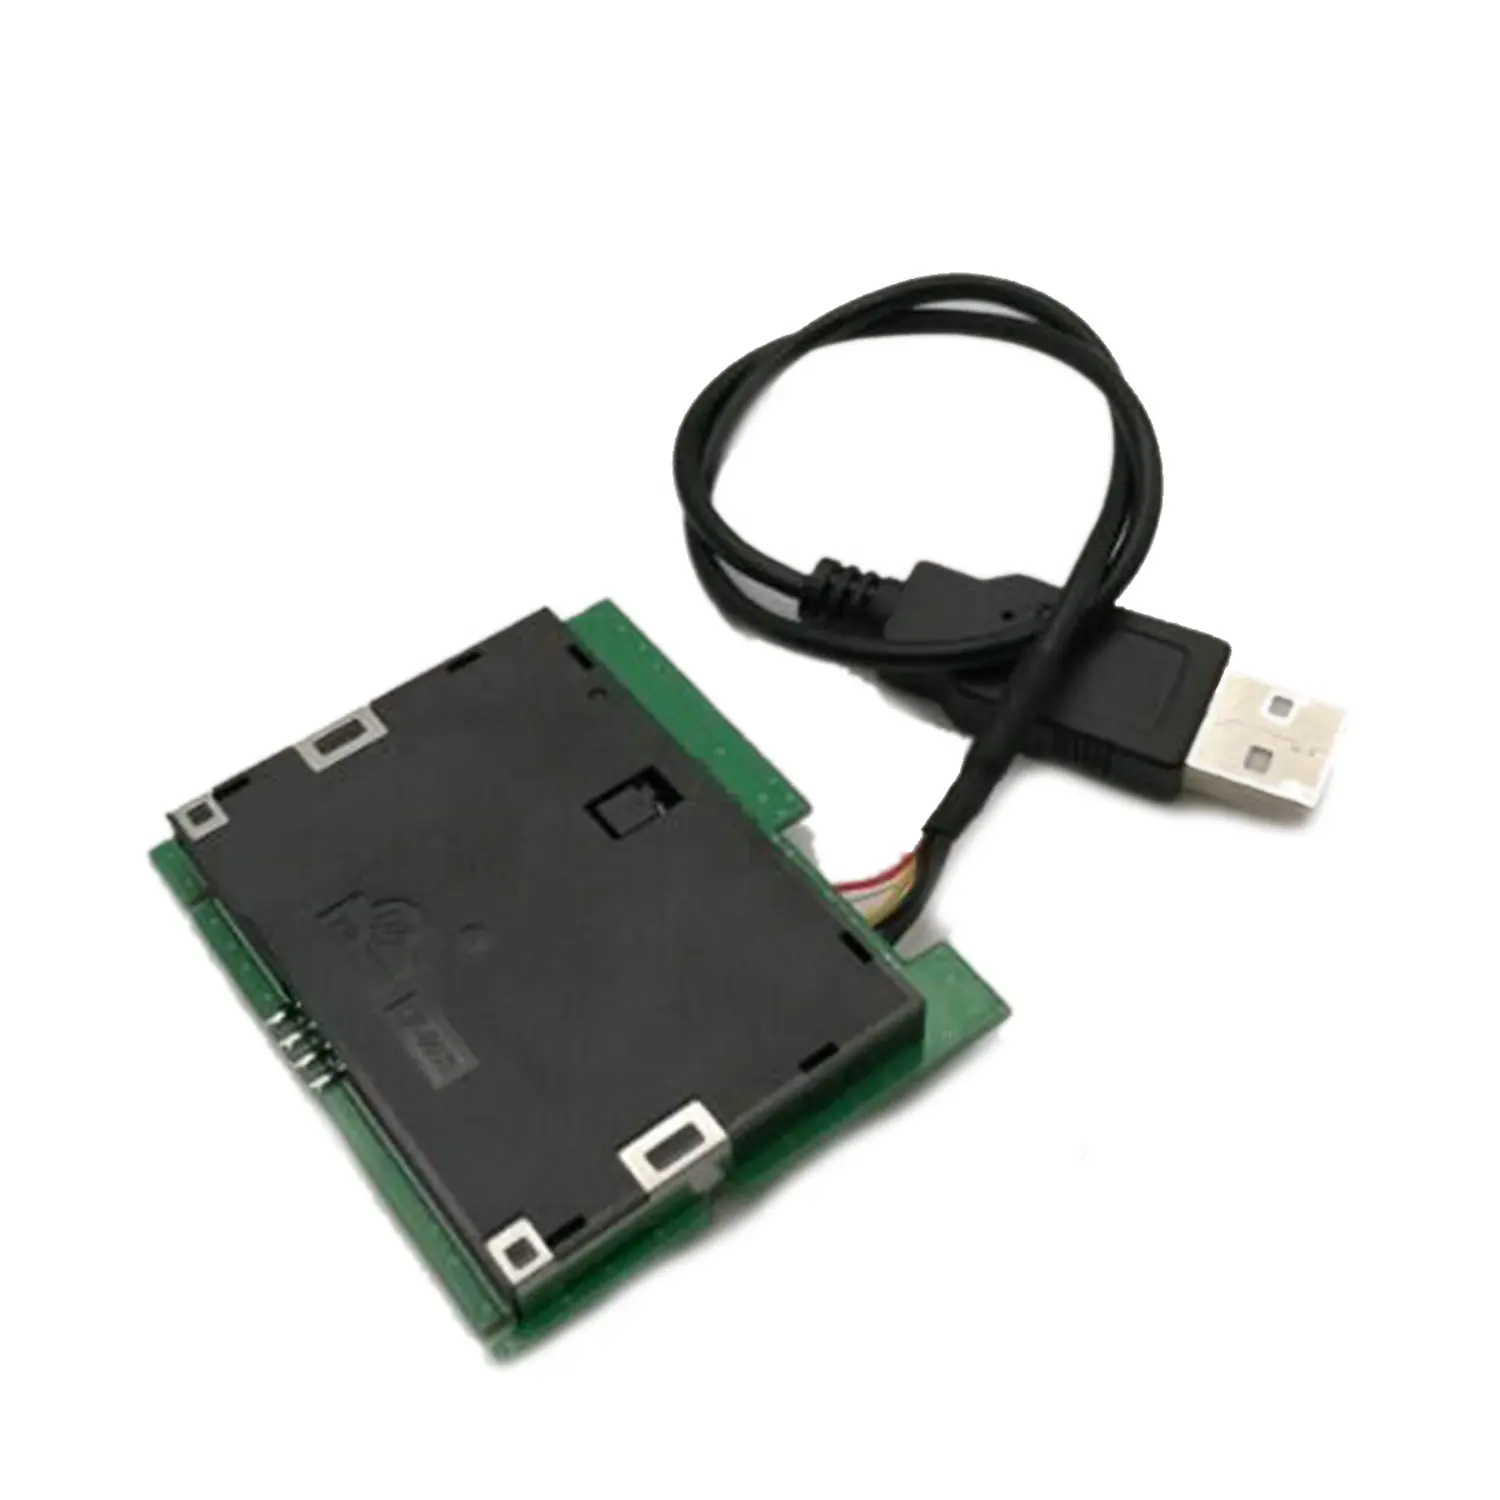 Módulo de leitor de cartão inteligente, ISO-7816 usb, floppy ic chip com sdk MCR3521-M grátis